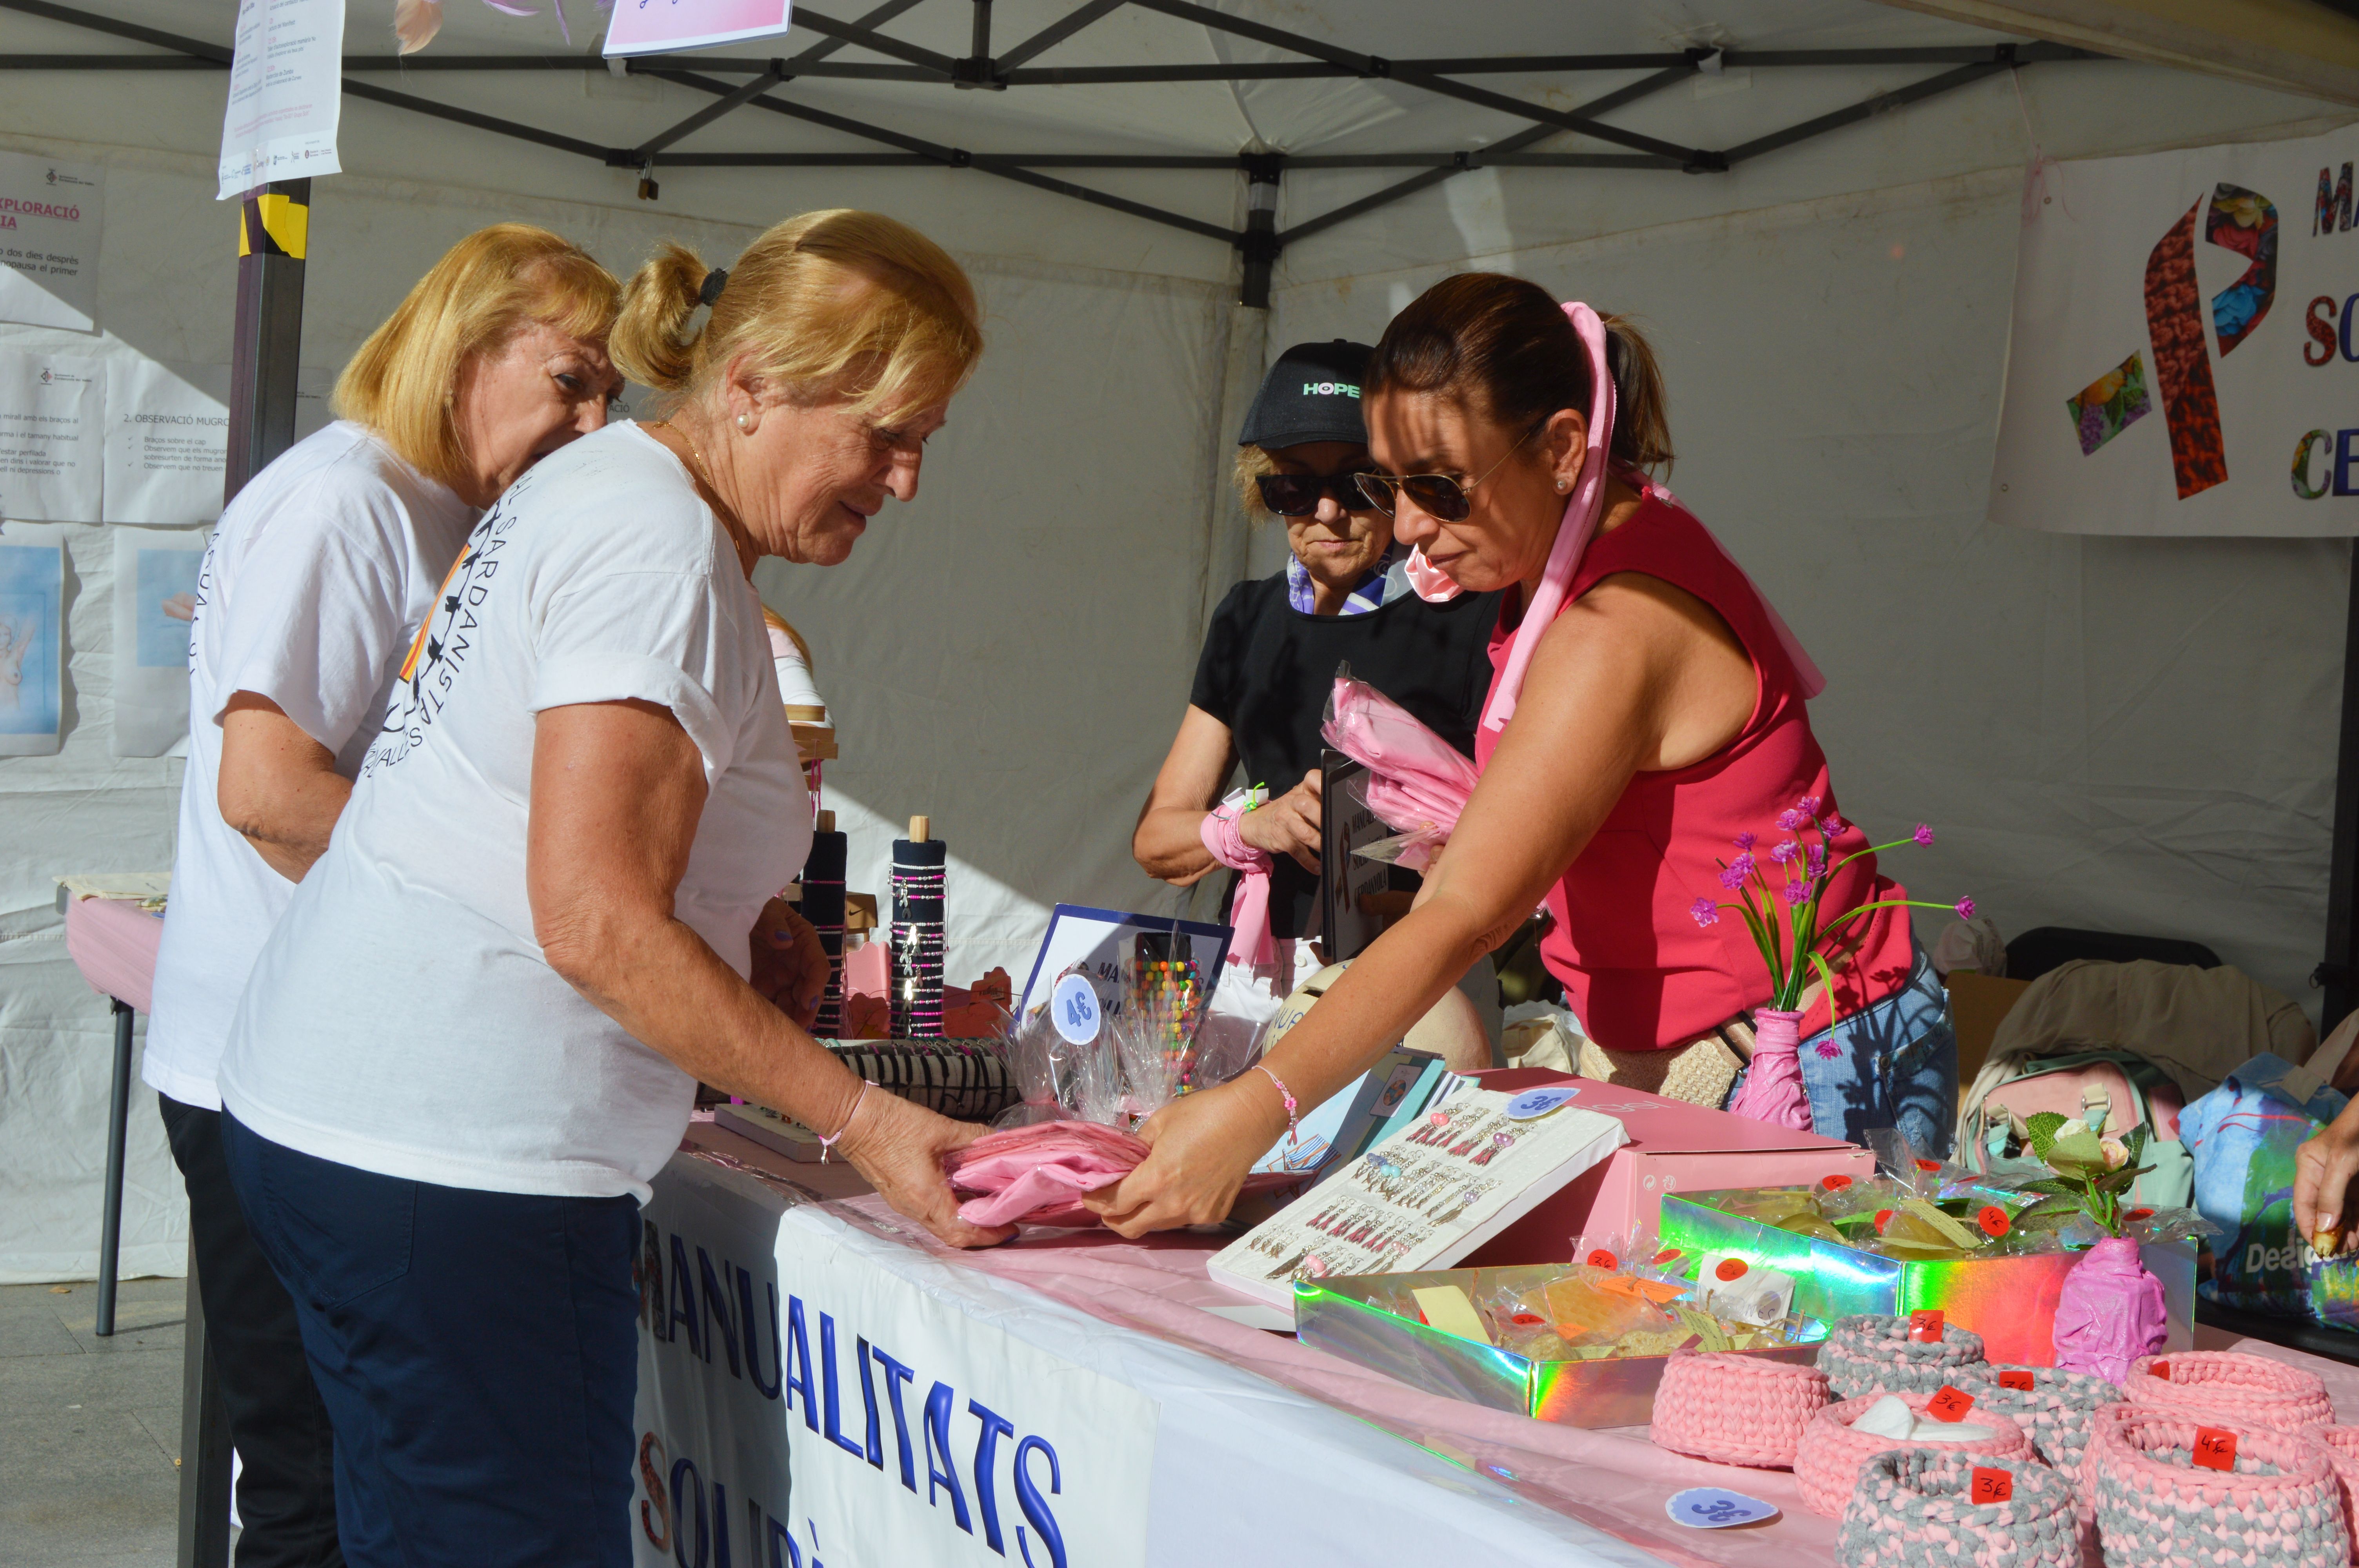 Les imatges de la commemoració contra el càncer de mama a Cerdanyola. FOTO: Nora MO